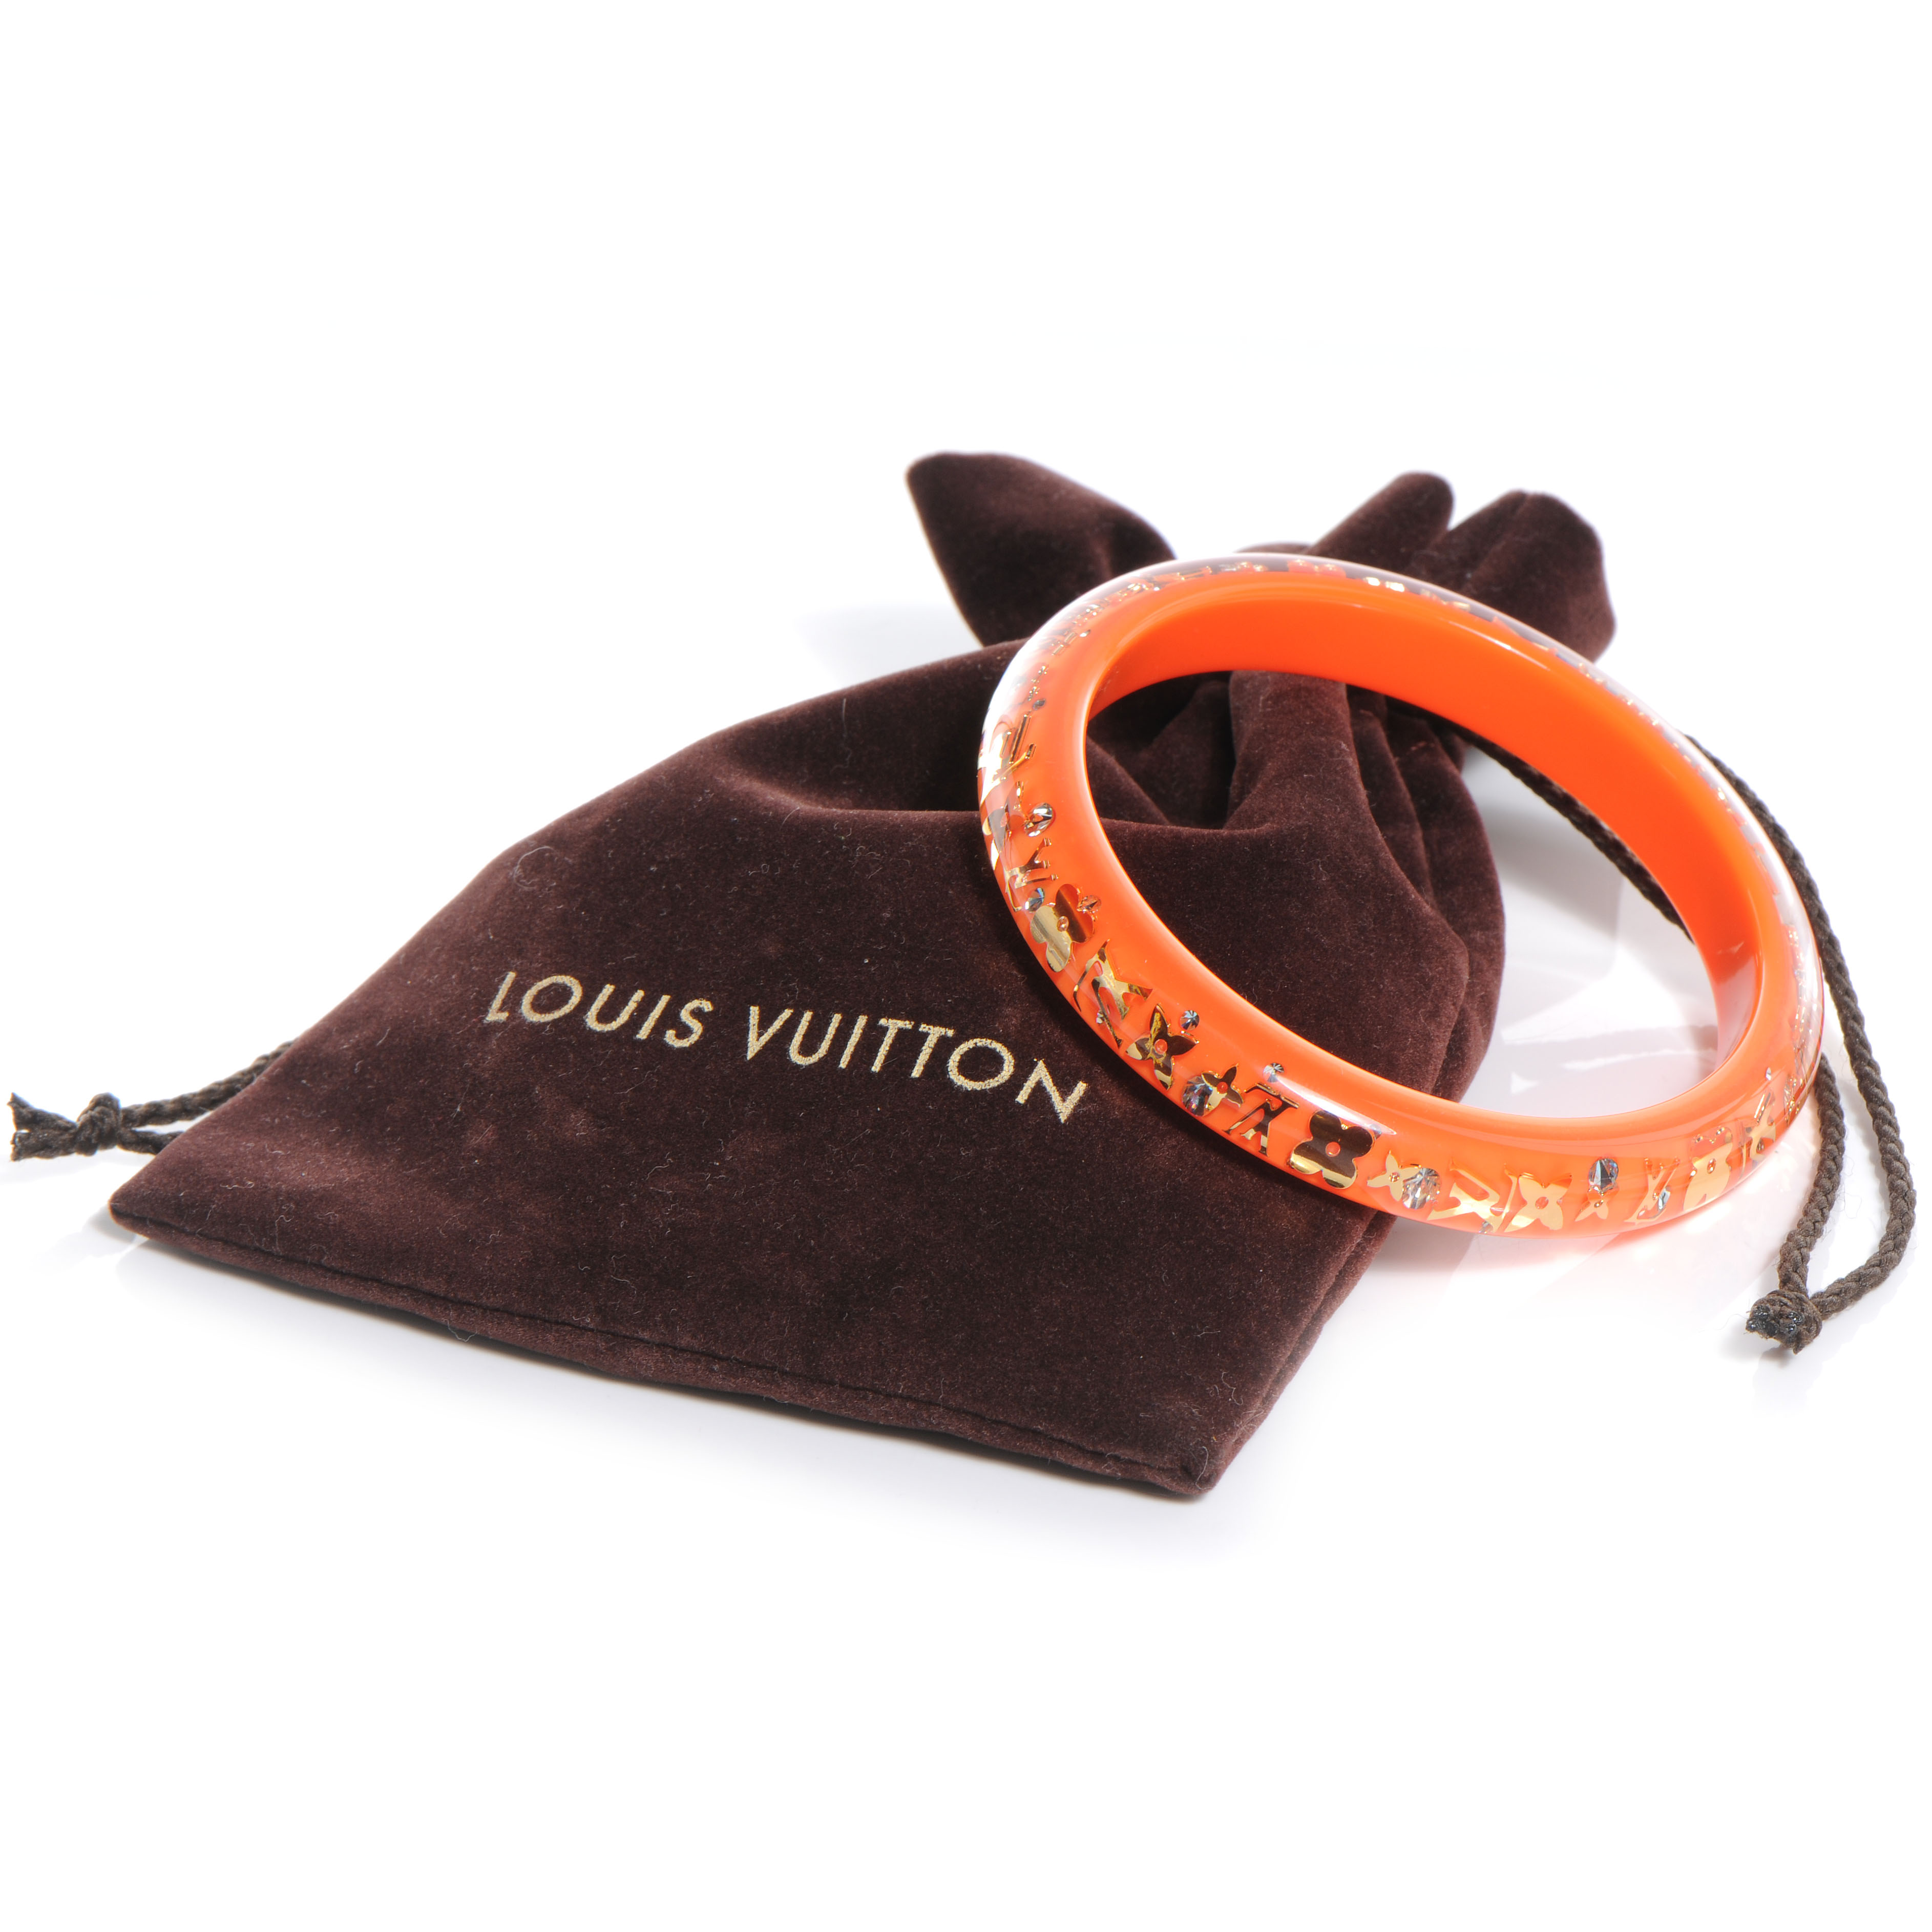 LOUIS VUITTON Inclusion Bracelet PM Size Small Orange Sunset 57449